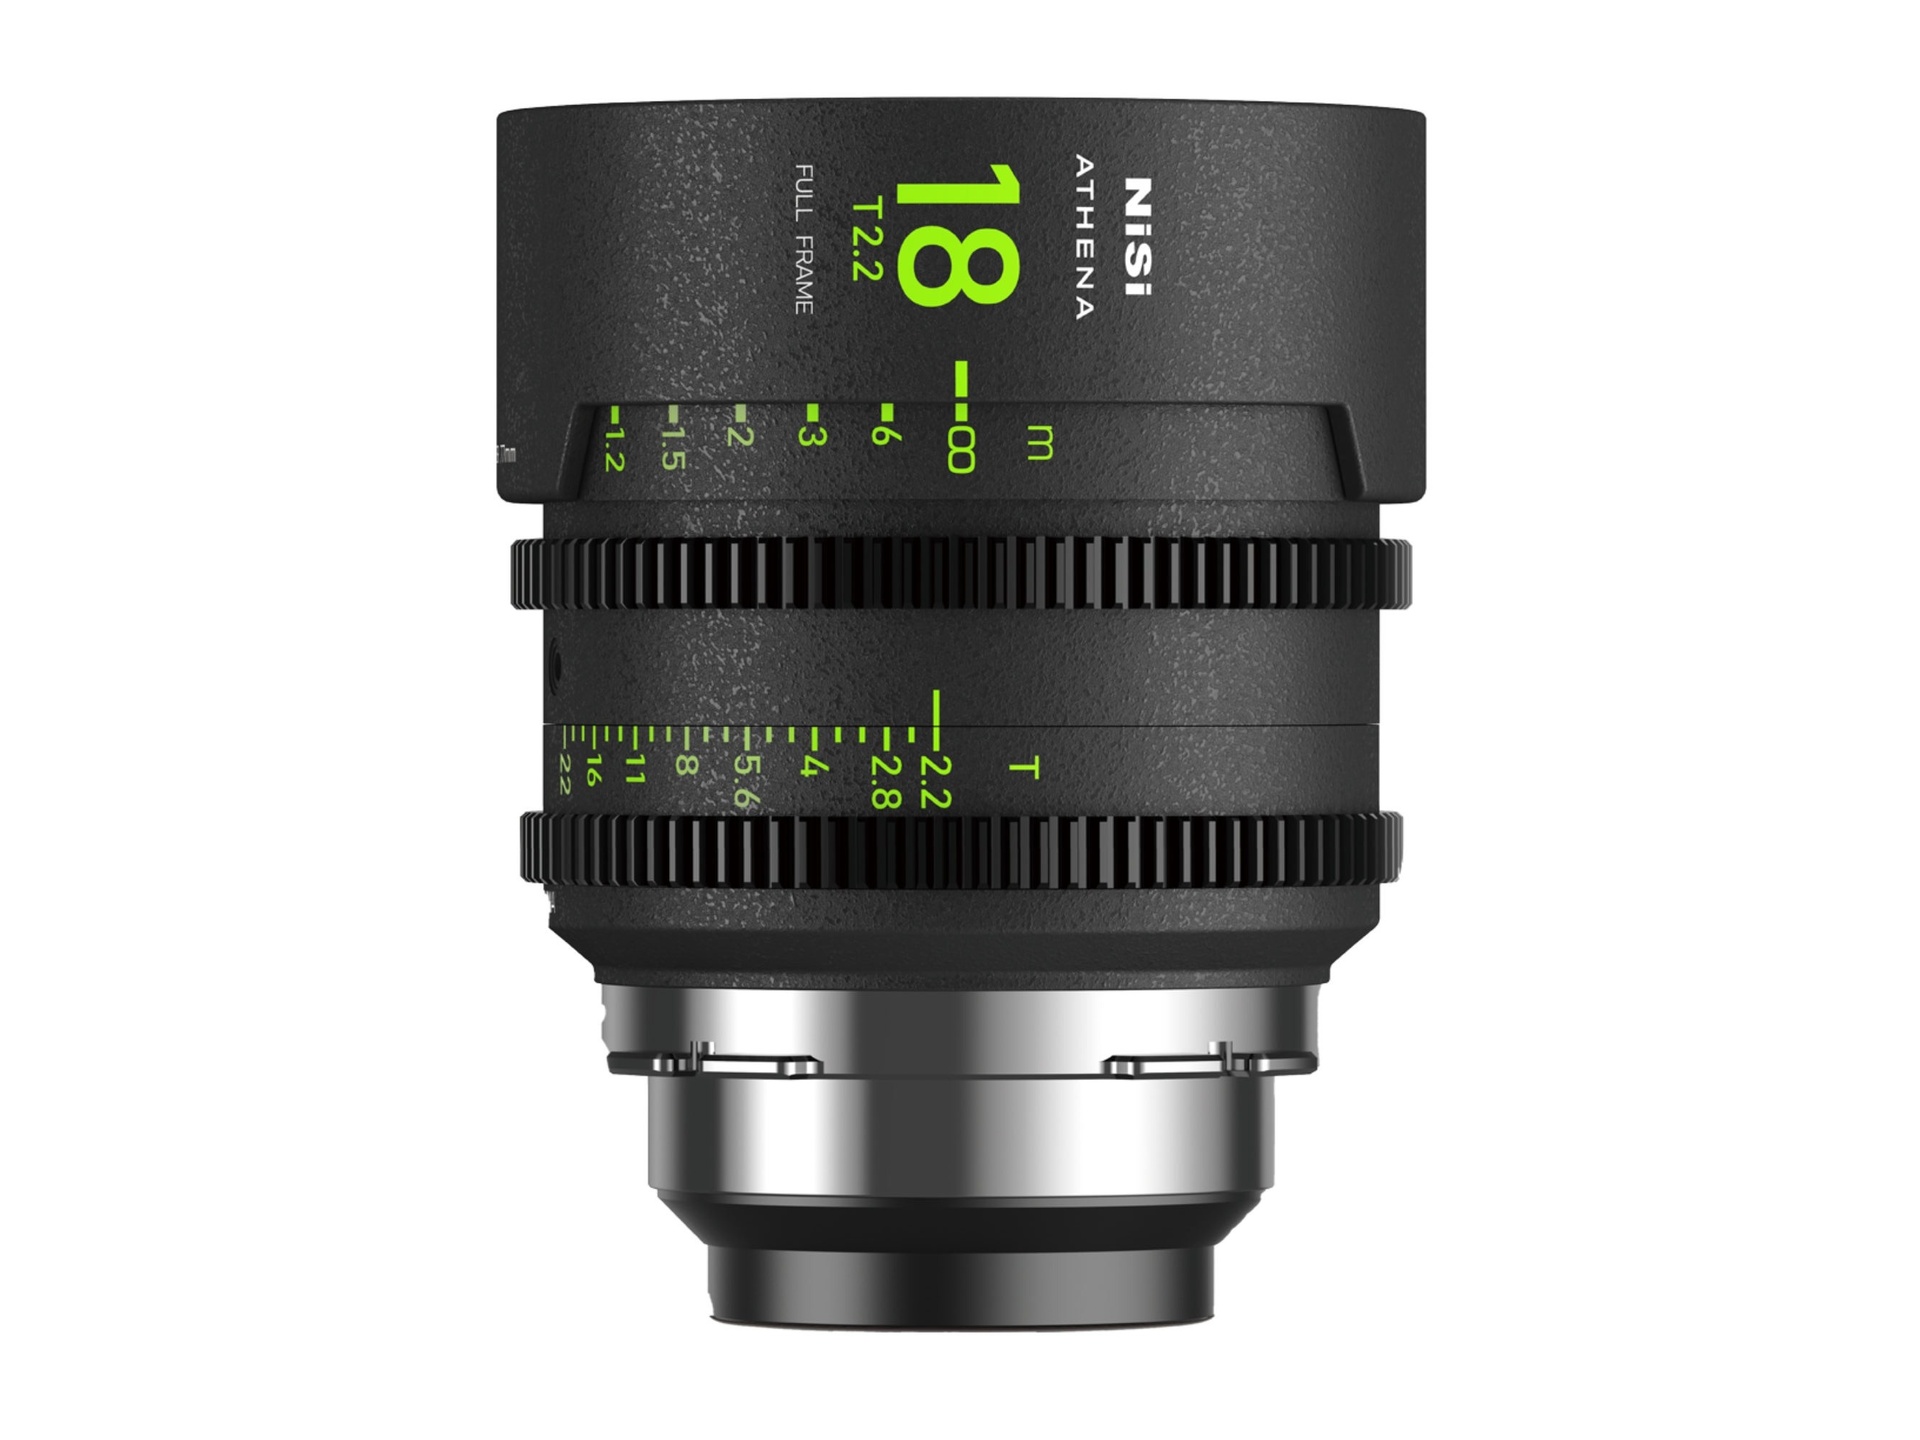 NiSi ATHENA PRIME 18mm T2.2 Full Frame Cinema Lens (PL Mount)